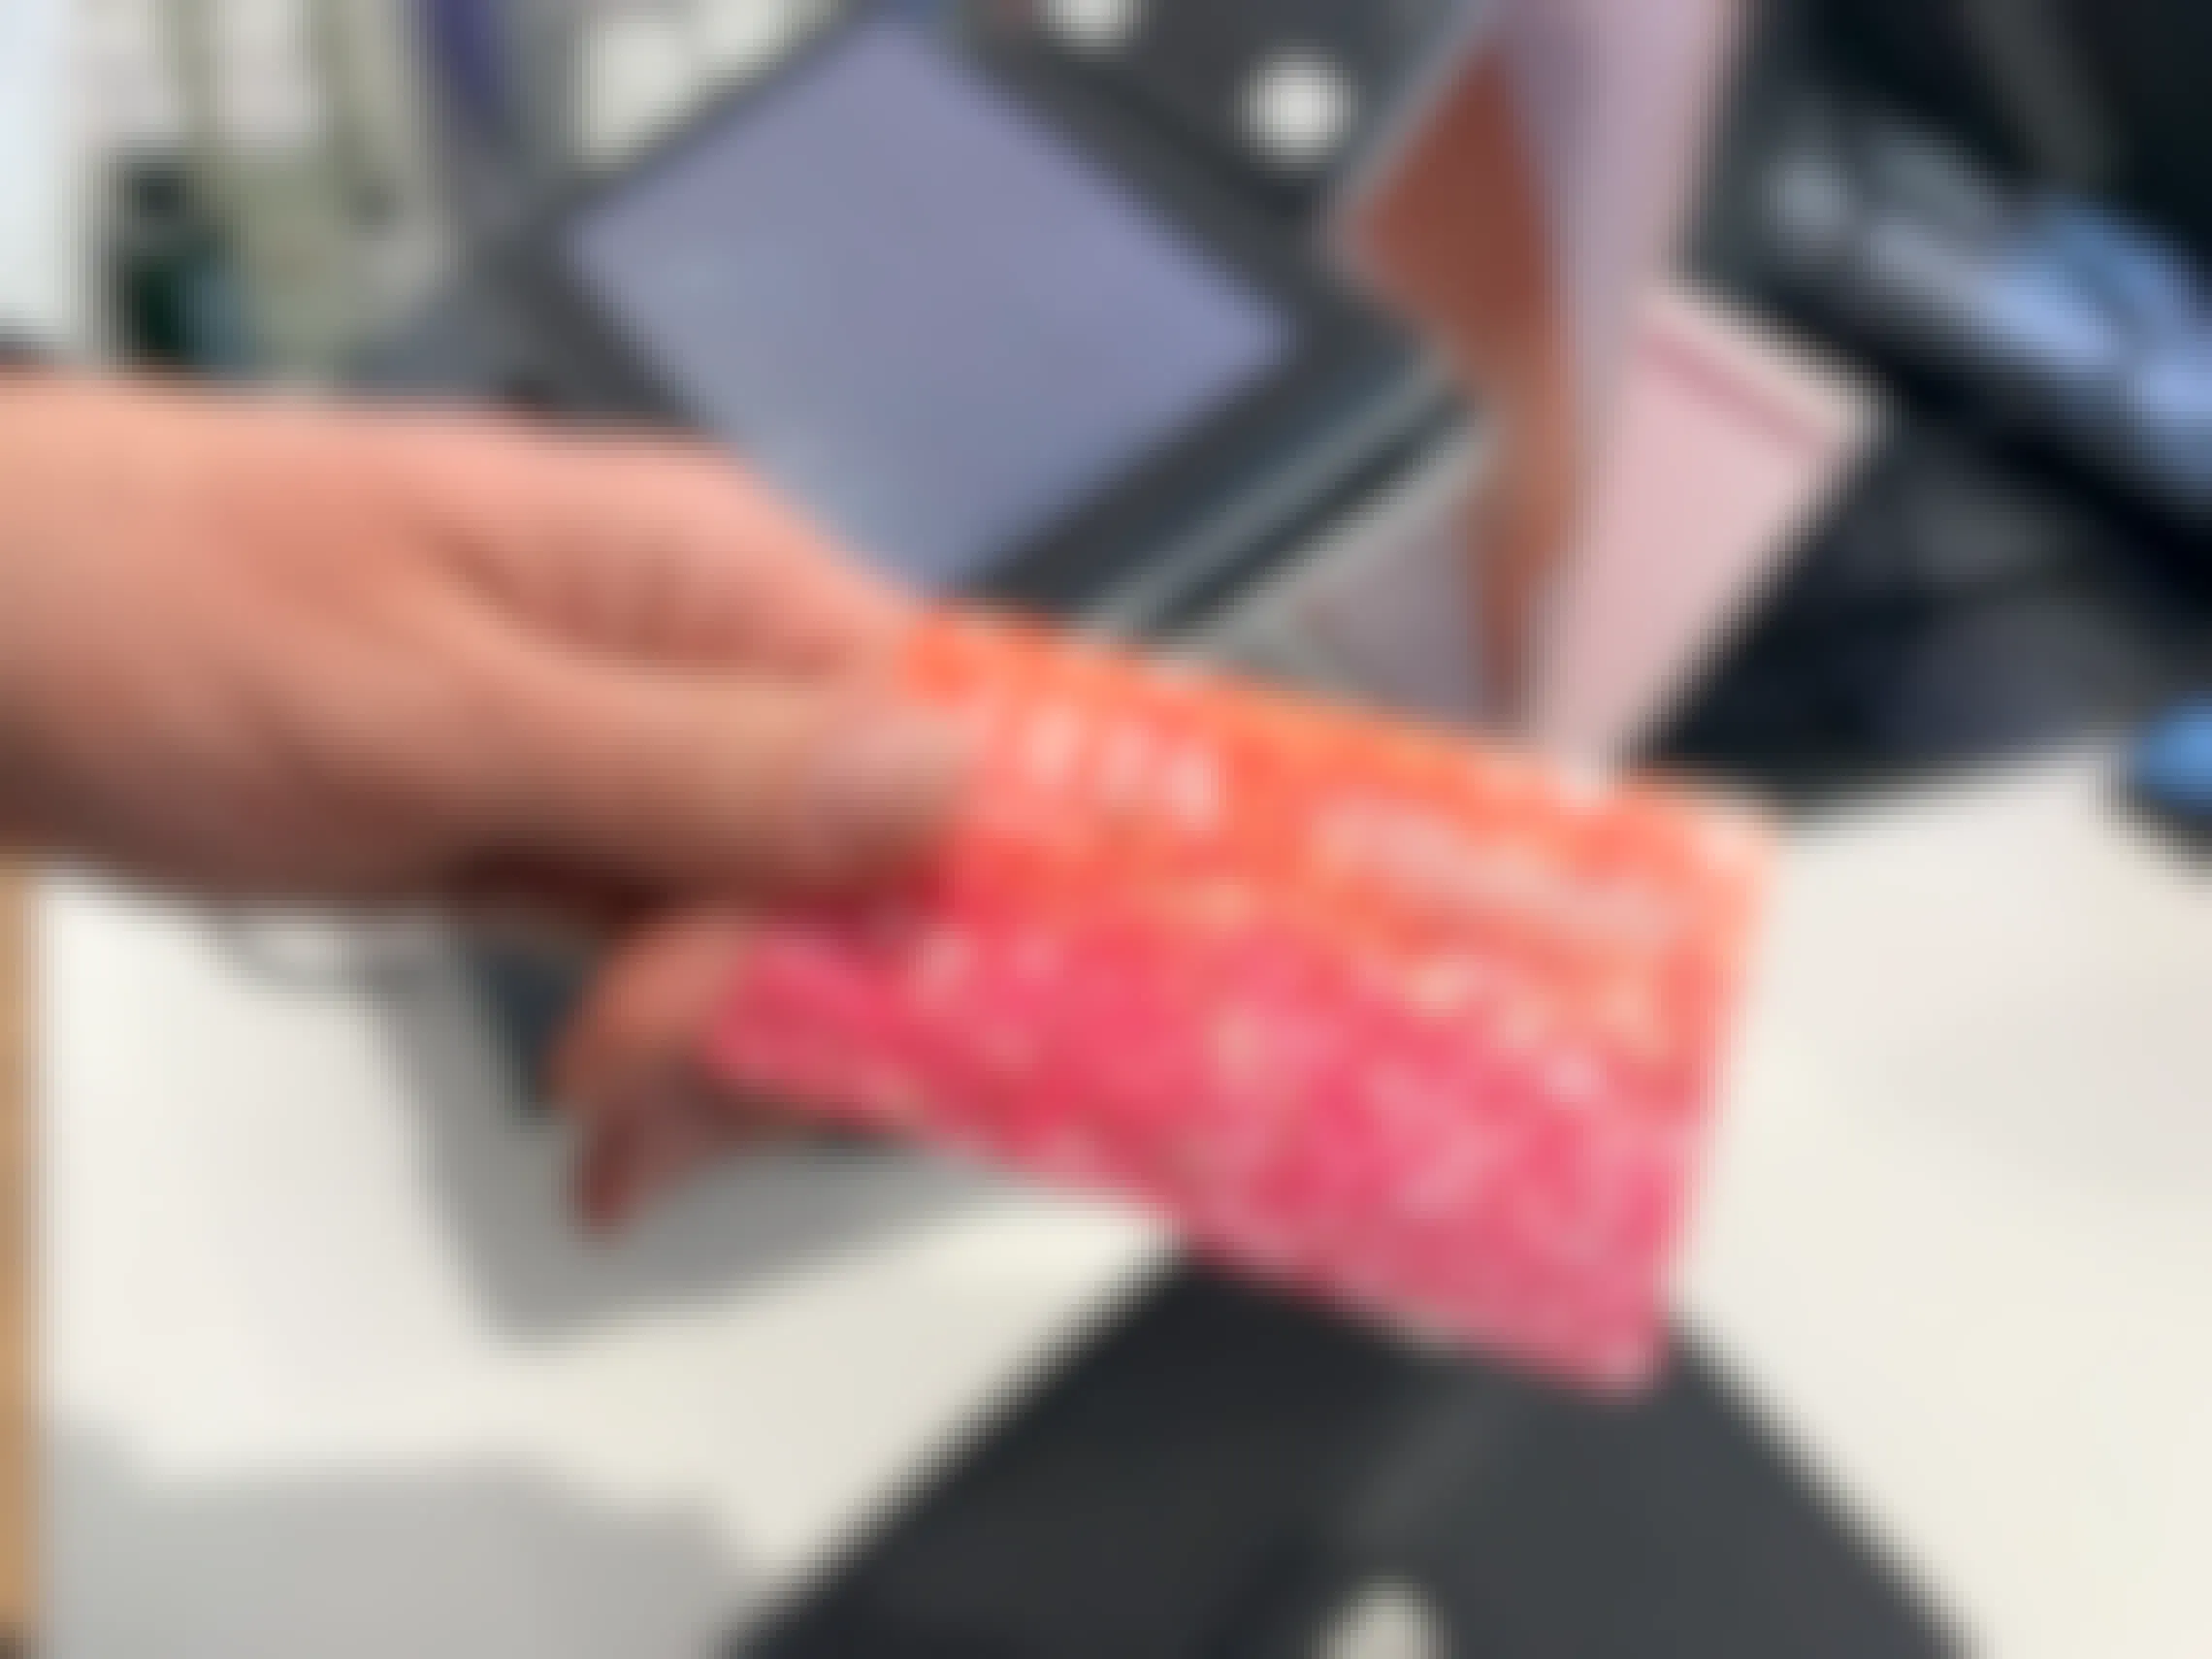 An Ulta credit card at checkout.